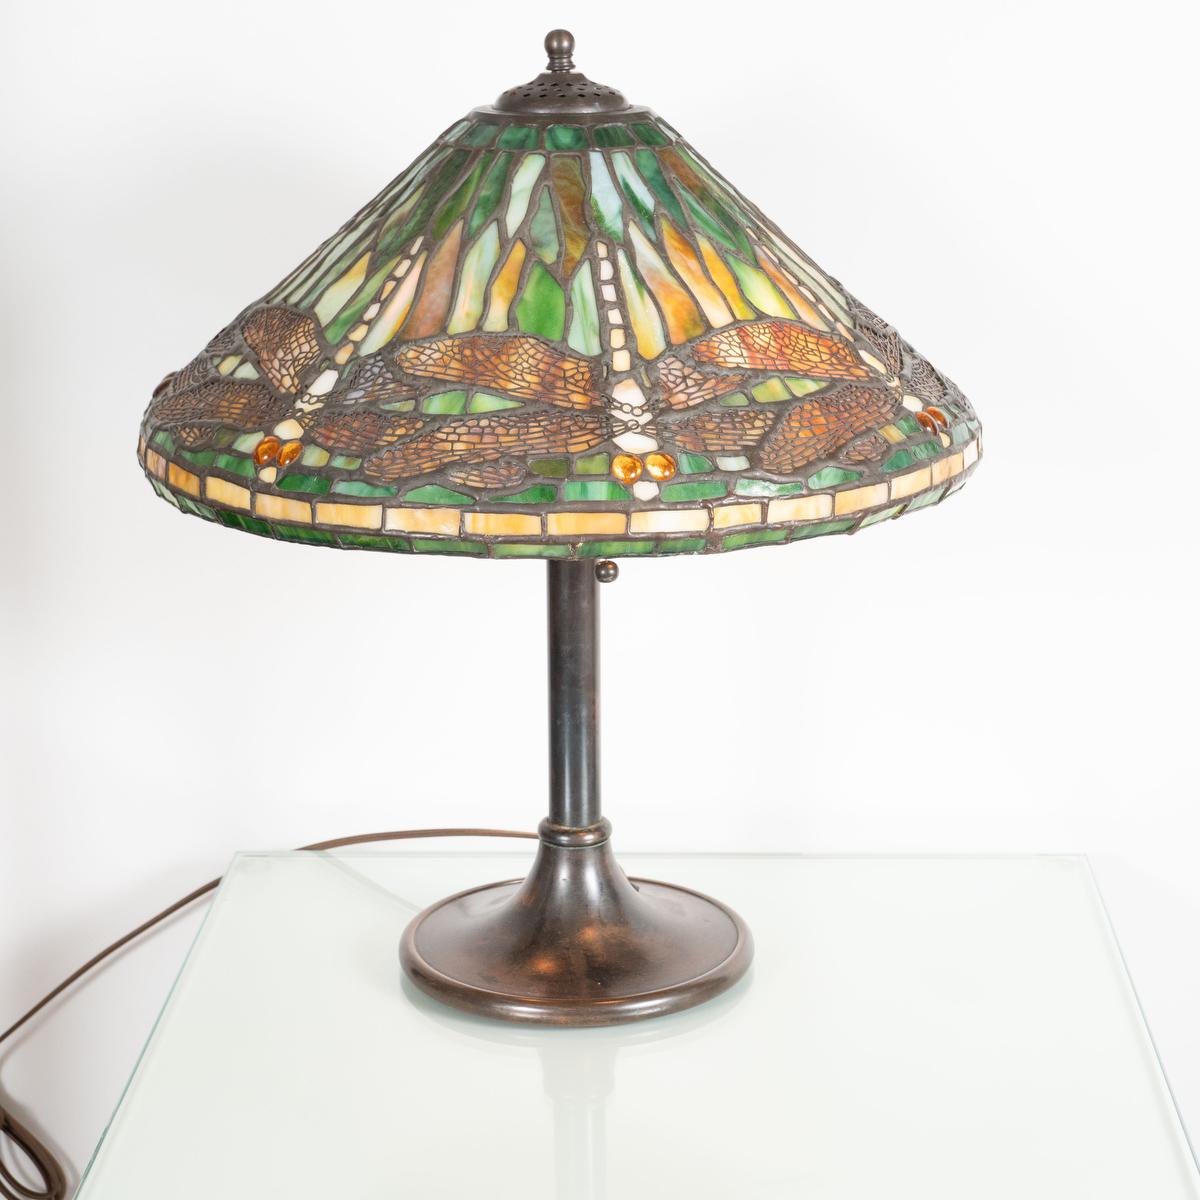 Einzelne Tischleuchte mit eingelegtem Glas und durchbrochenem Metallschirm im Stil von Lalique.